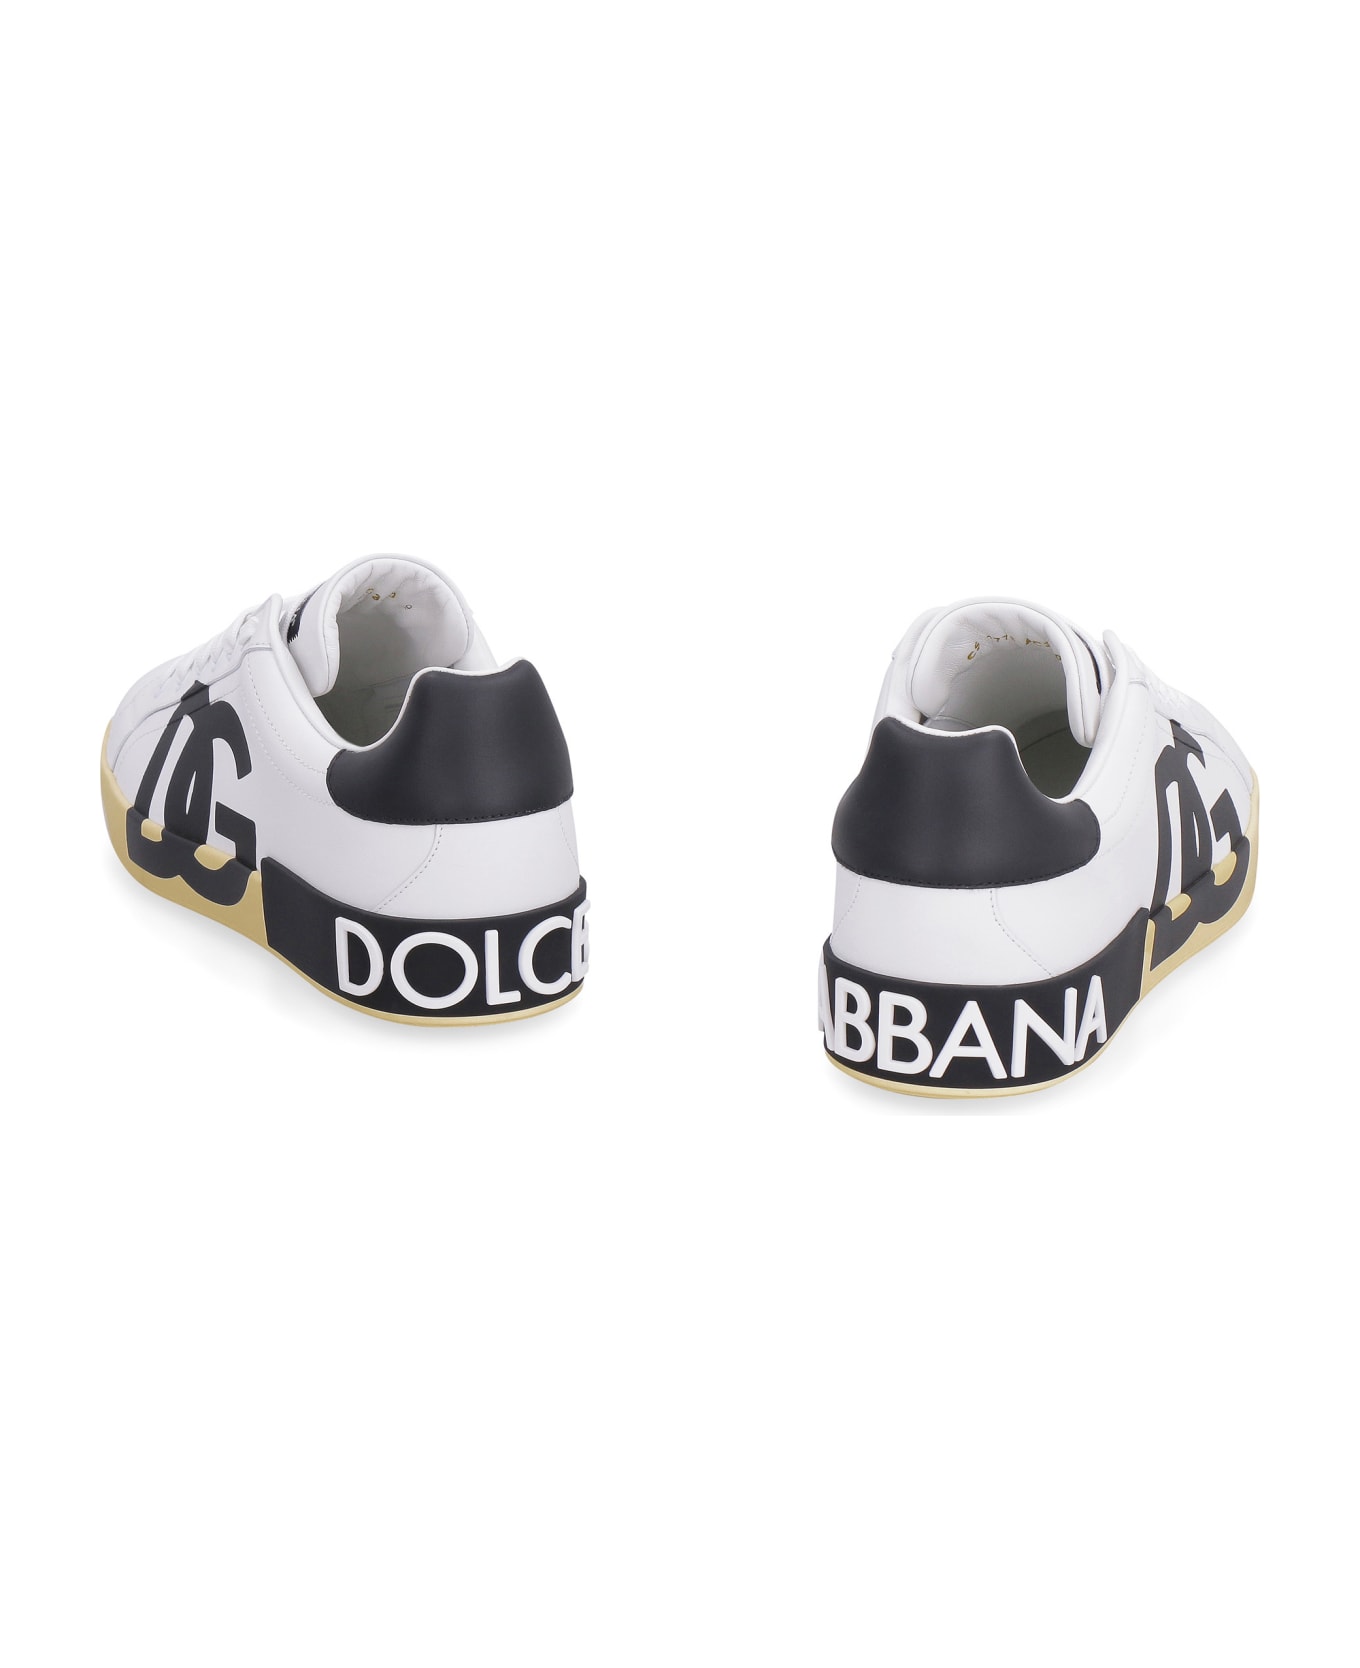 Dolce & Gabbana Portofino Leather Low-top Sneakers - White